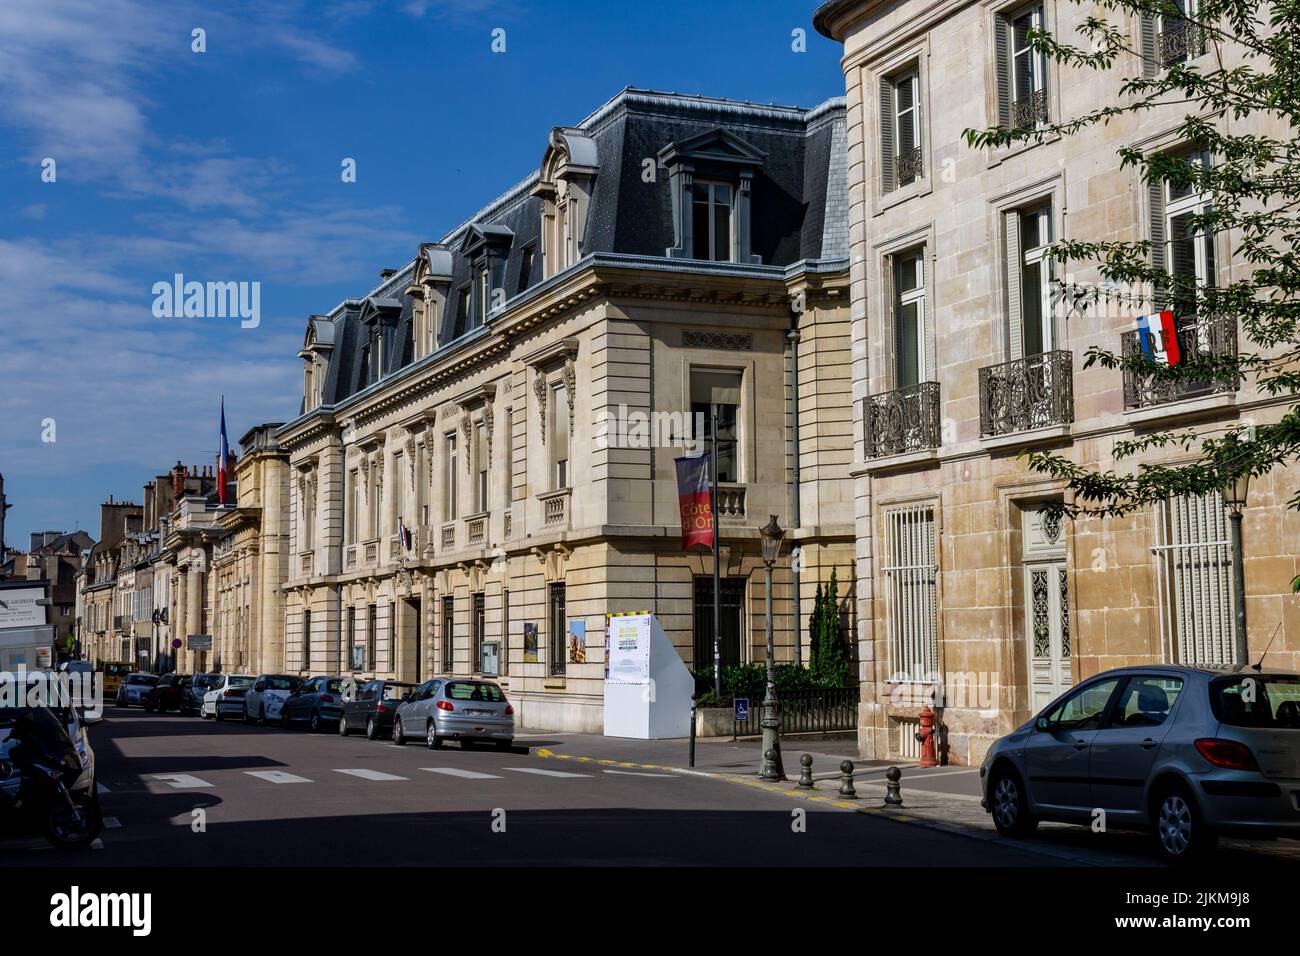 Les bâtiments historiques du centre ville de Dijon, France. Banque D'Images